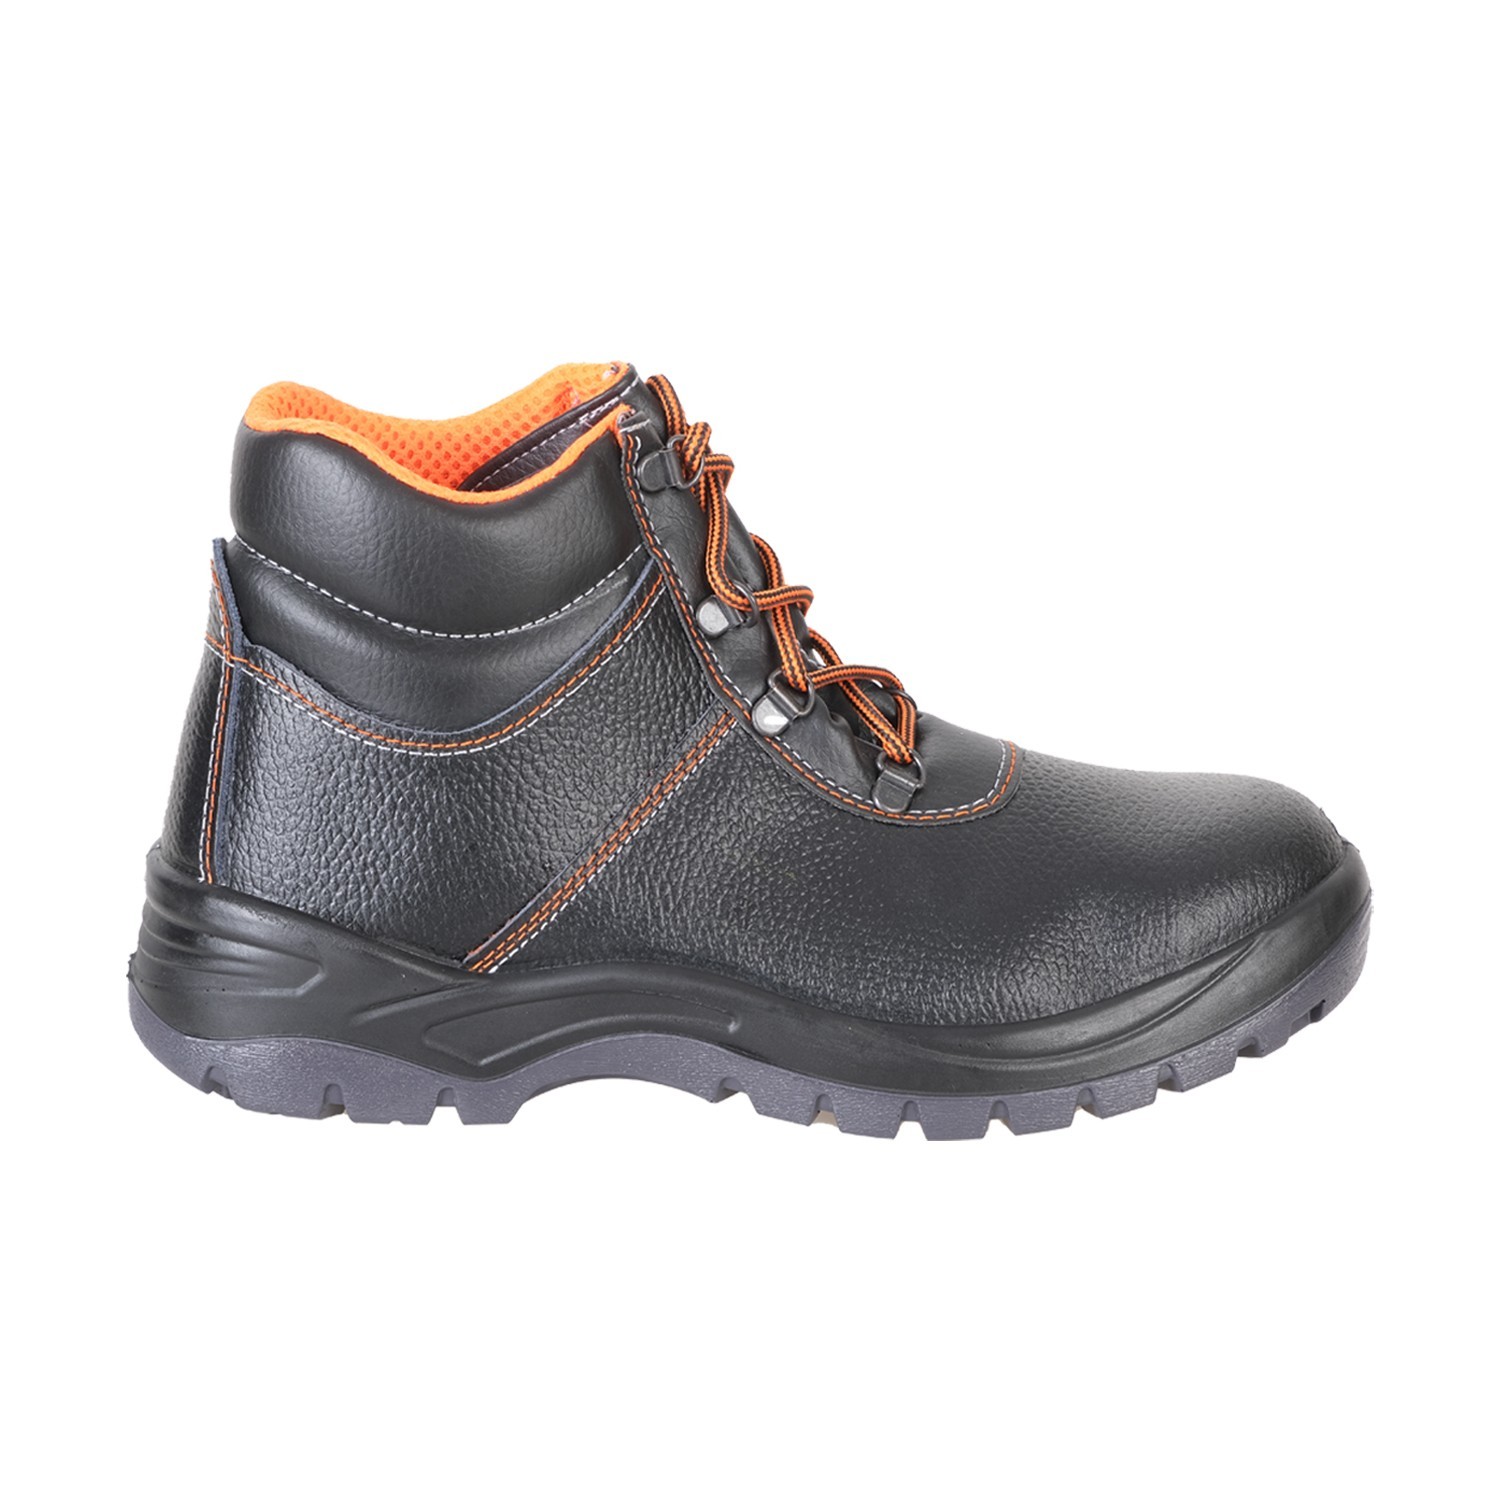 Кожаные защитные ботинки для работы  Mekap 023 R Leather S2 